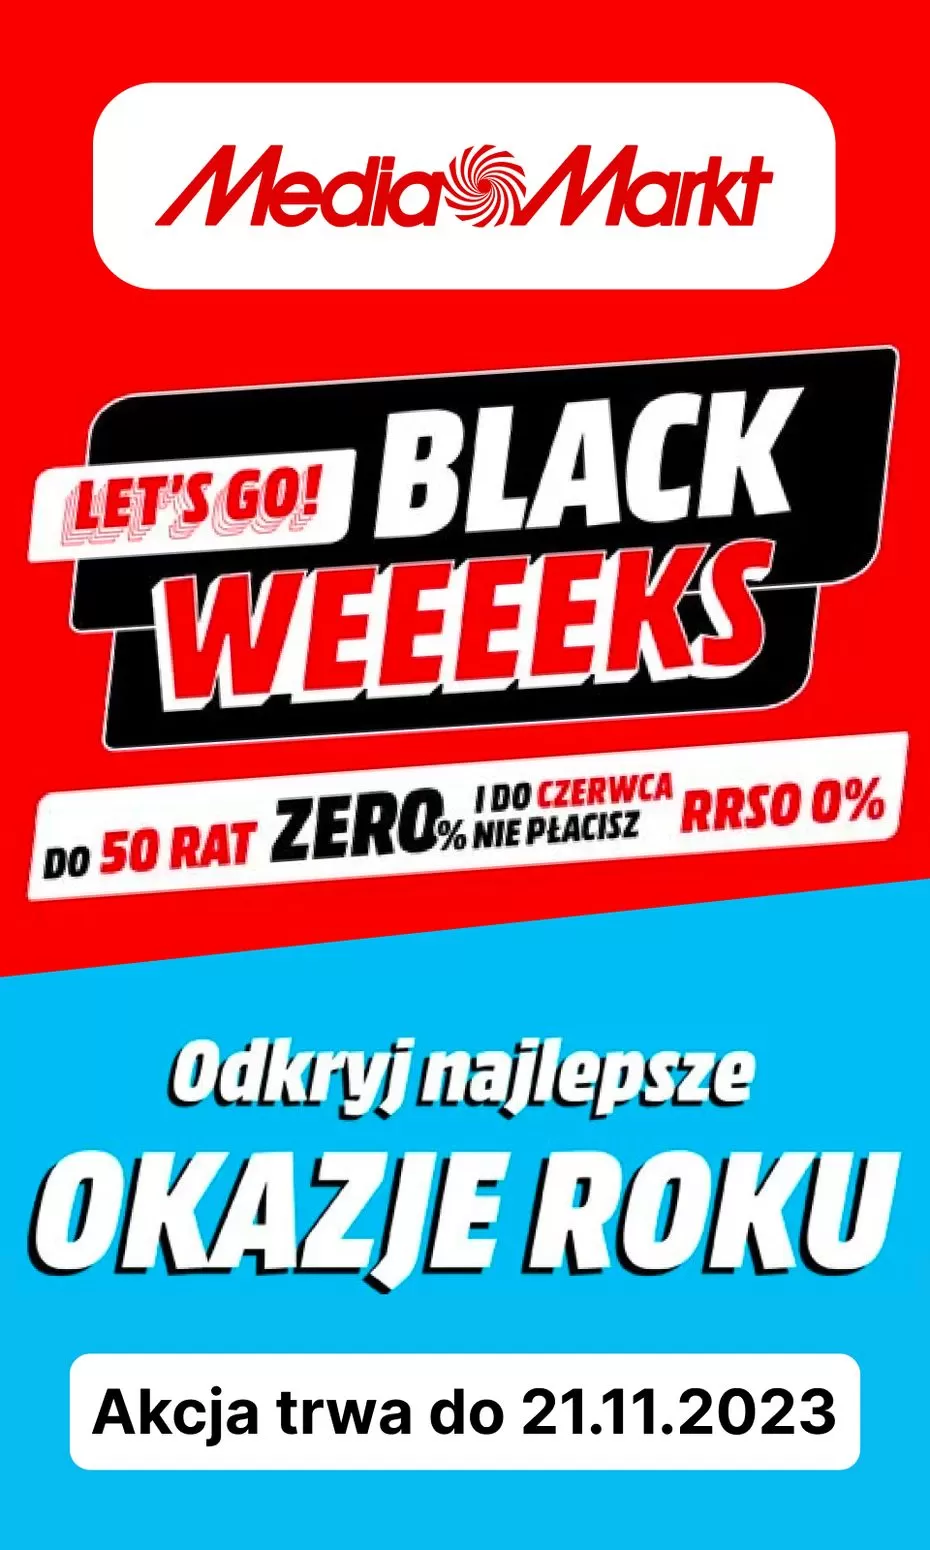 Gazetka promocyjna sklepu Media Markt - Lets go! Black weeeeks - data obowiązywania: od 14.11 do 21.11